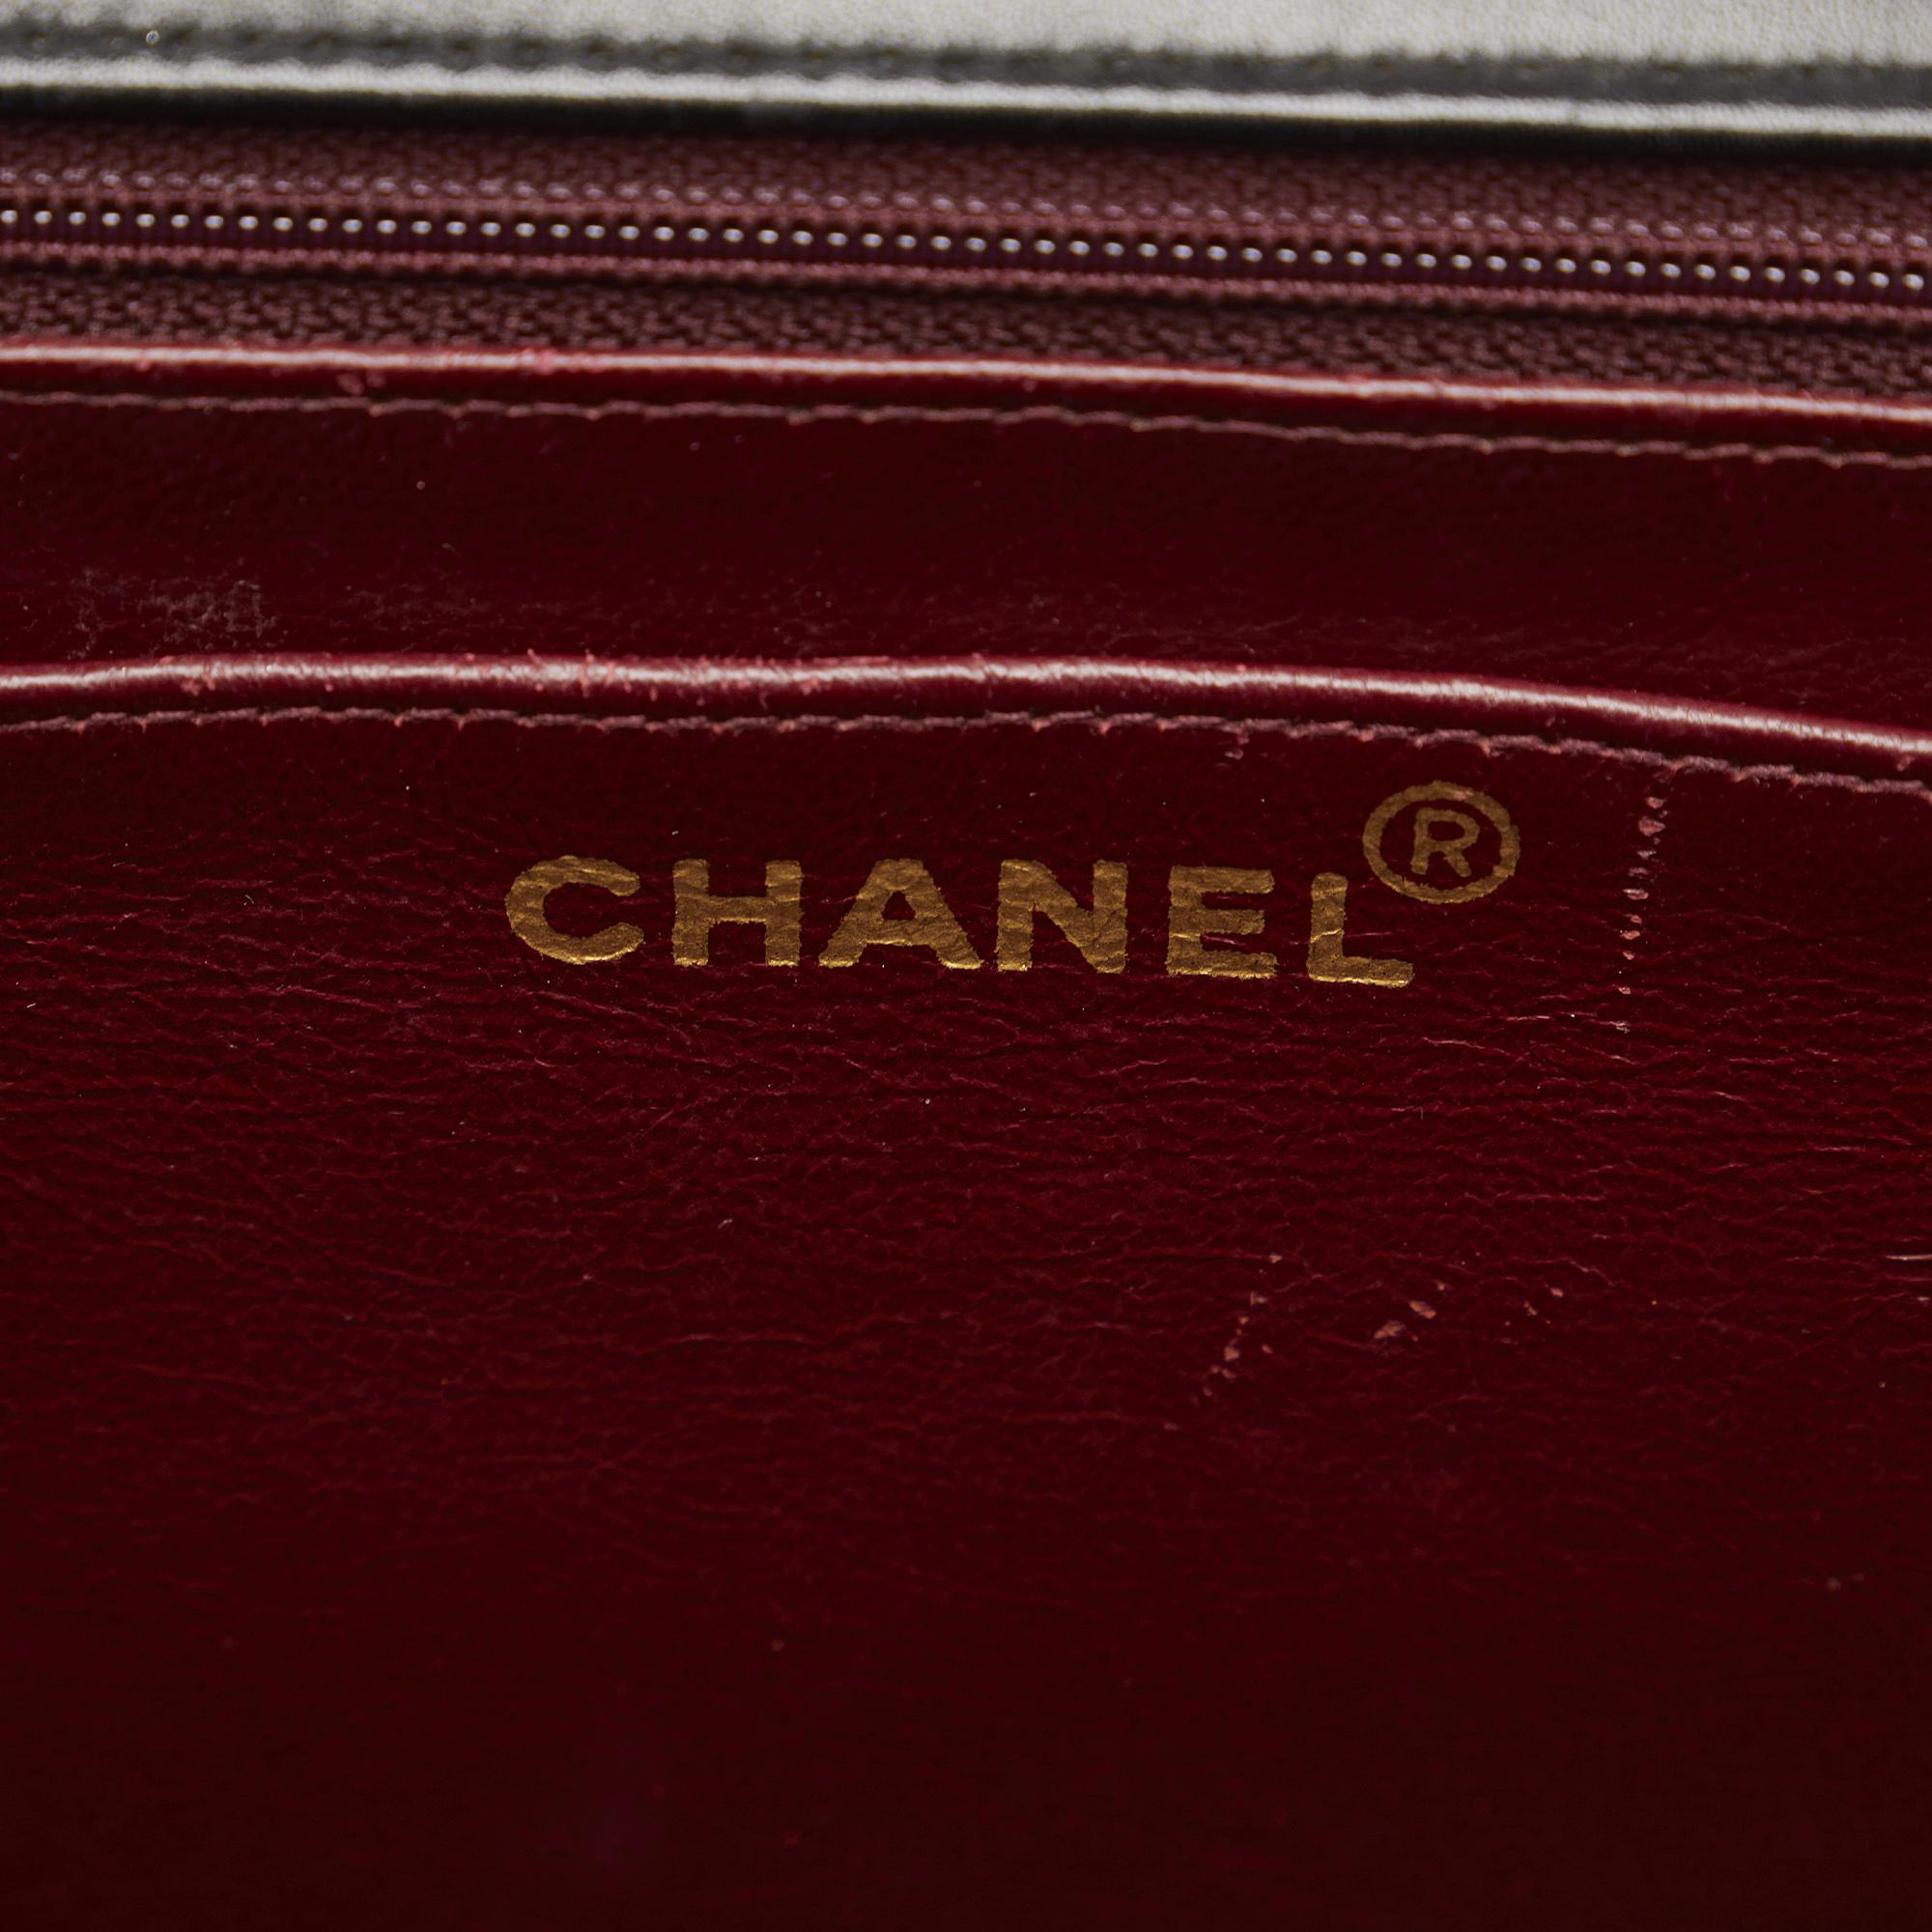 Chanel Black Maxi XL Classic Lambskin Single Flap